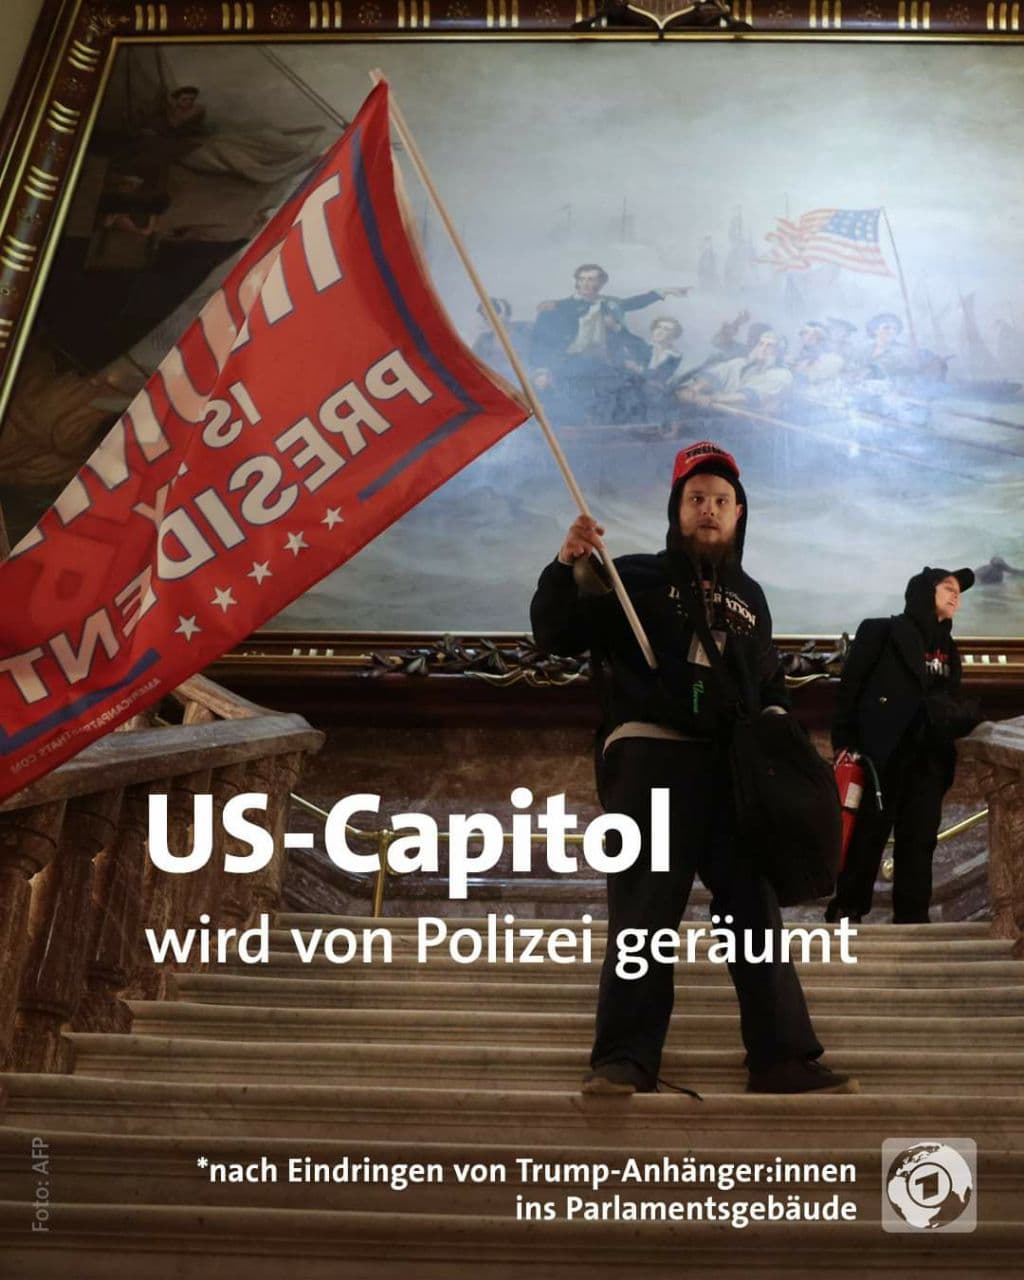 US-Capitol: ANTIFA mit TRUMP-Fahne